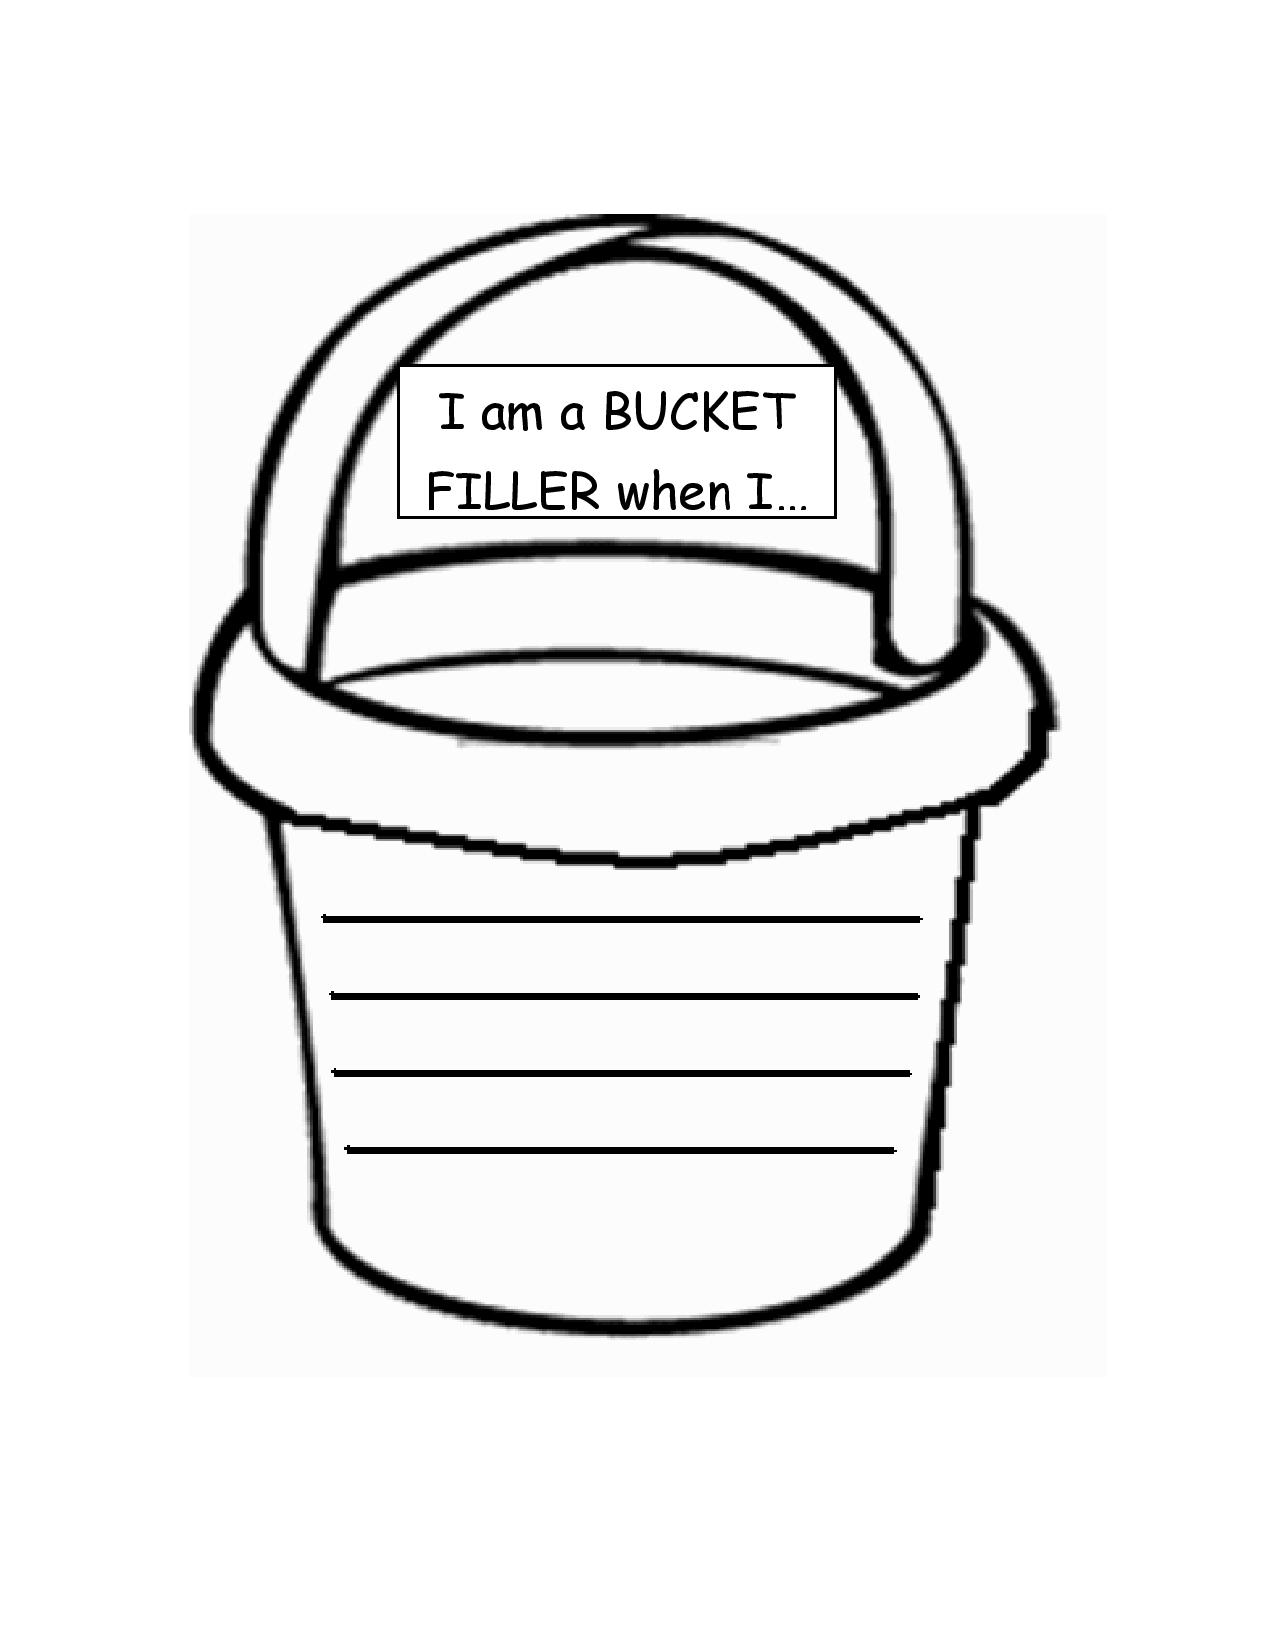 printable-bucket-filler-printable-world-holiday